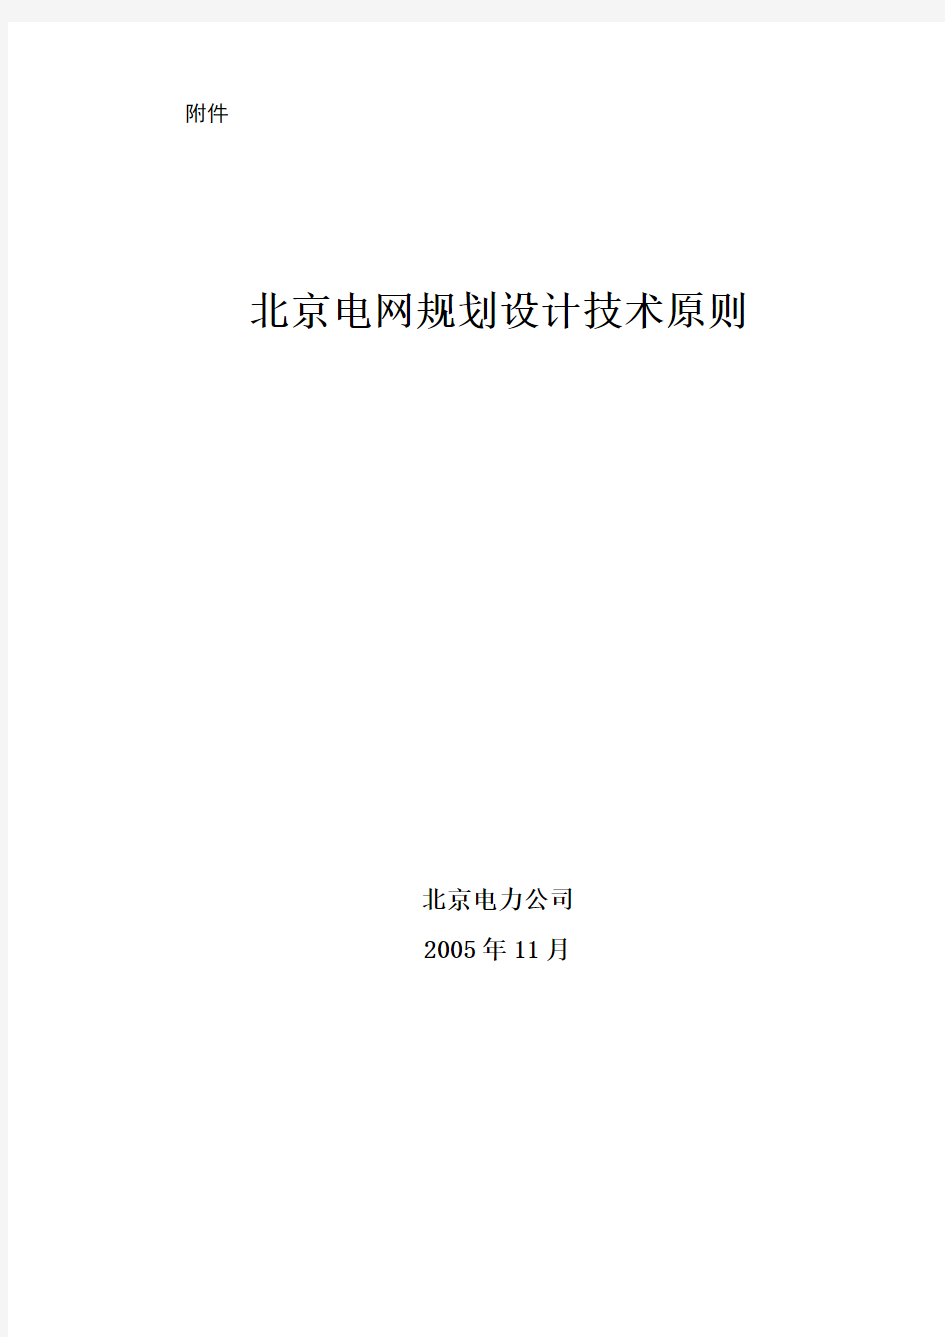 北京电网规划设计技术原则(最终12-18)